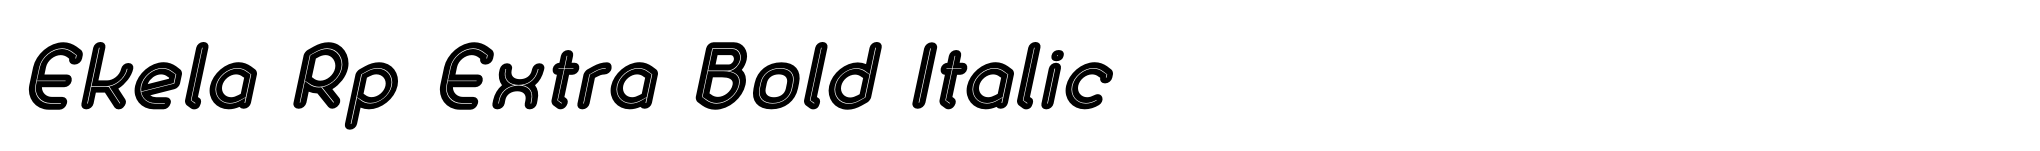 Ekela Rp Extra Bold Italic image